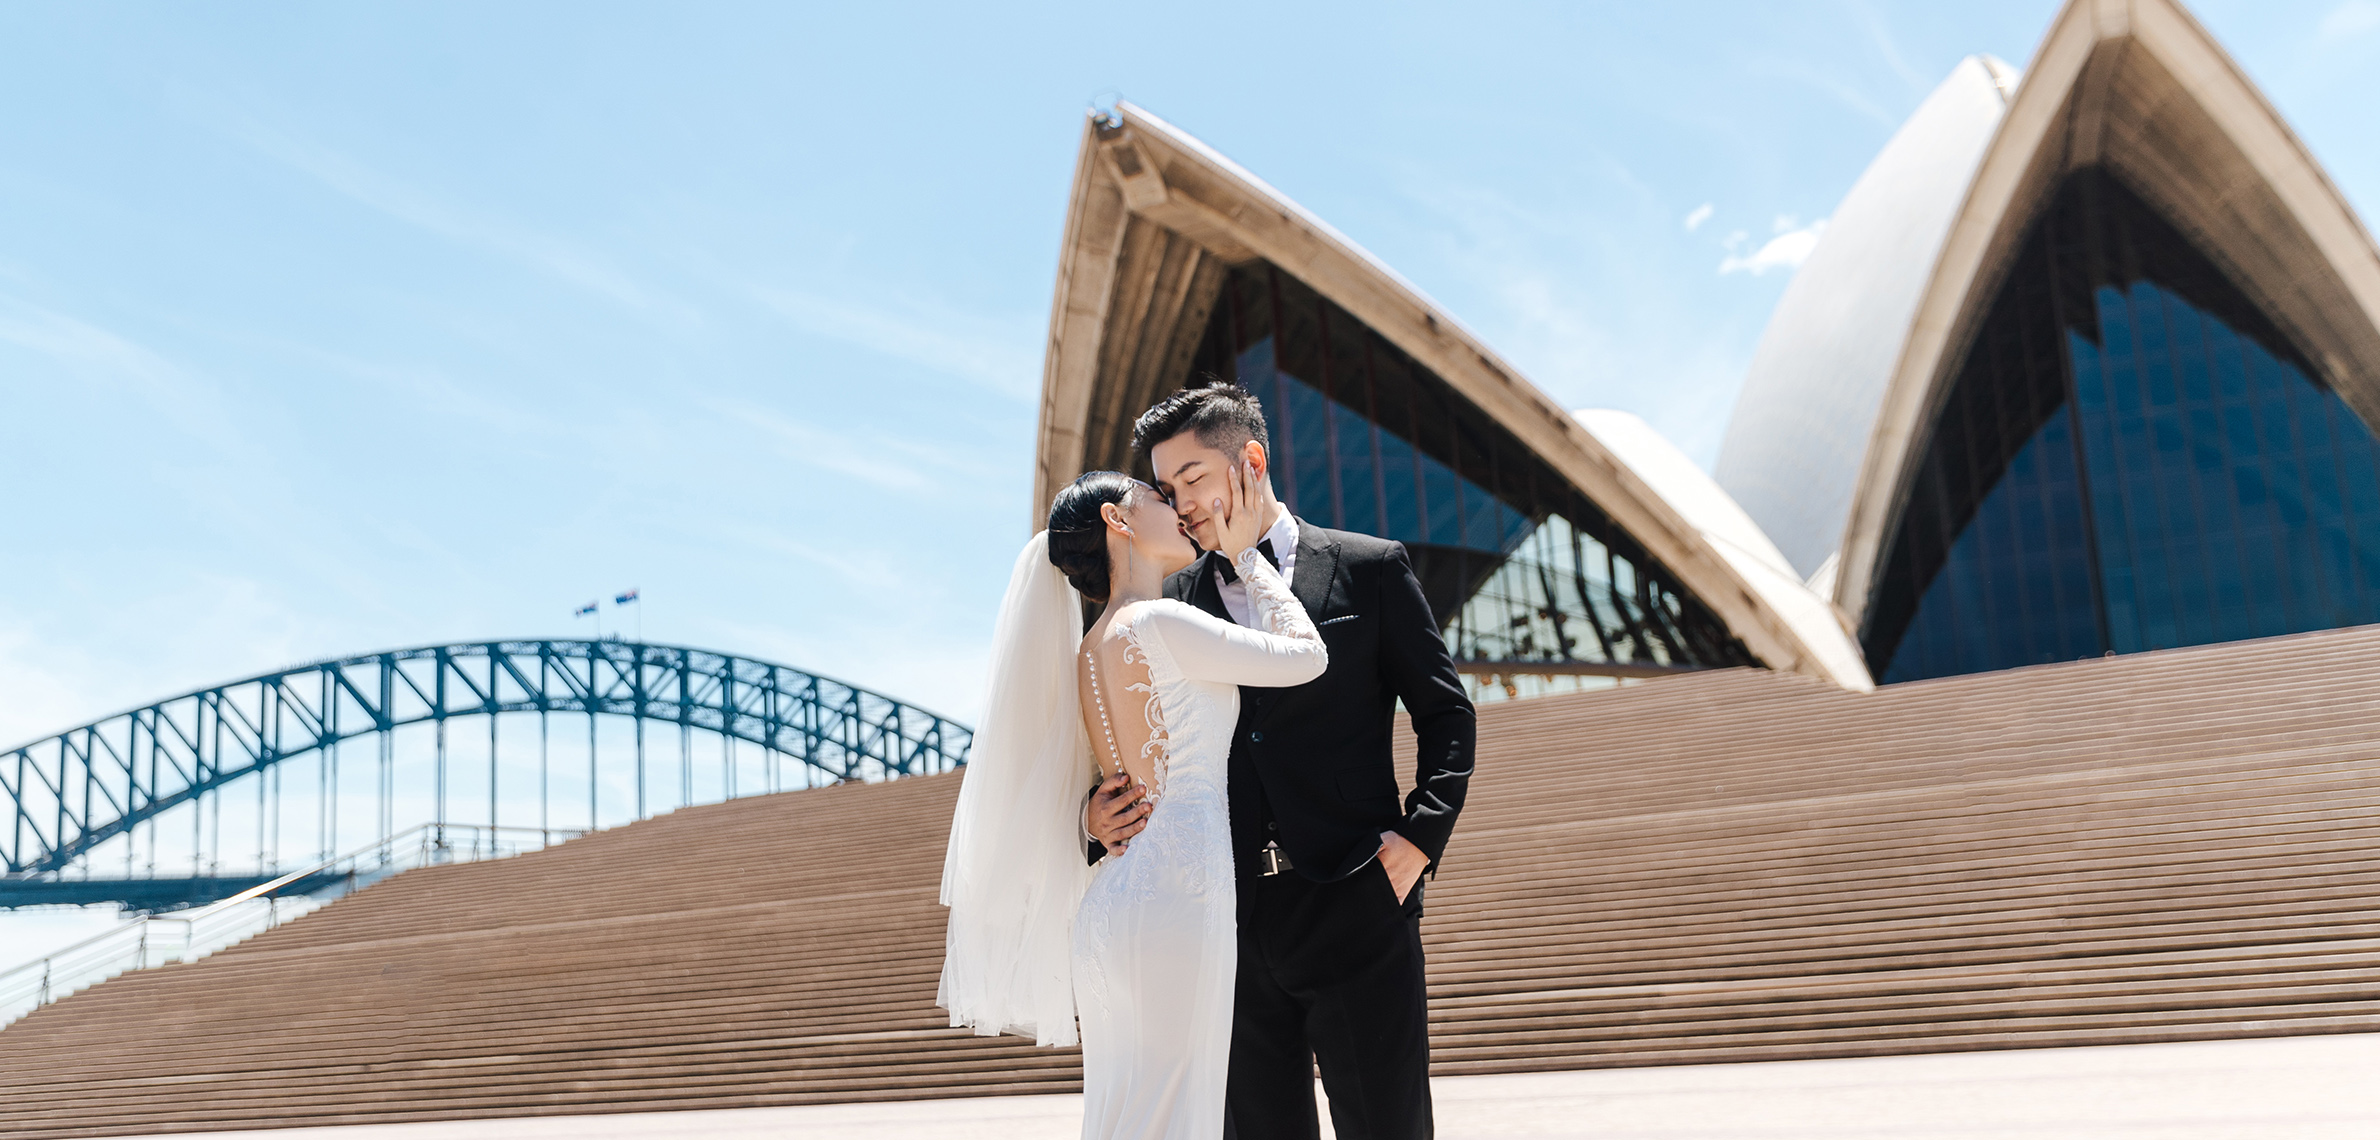 悉尼婚纱照,悉尼婚纱旅拍,澳大利亞婚紗攝影,悉尼婚紗攝影,澳大利亚婚纱旅拍